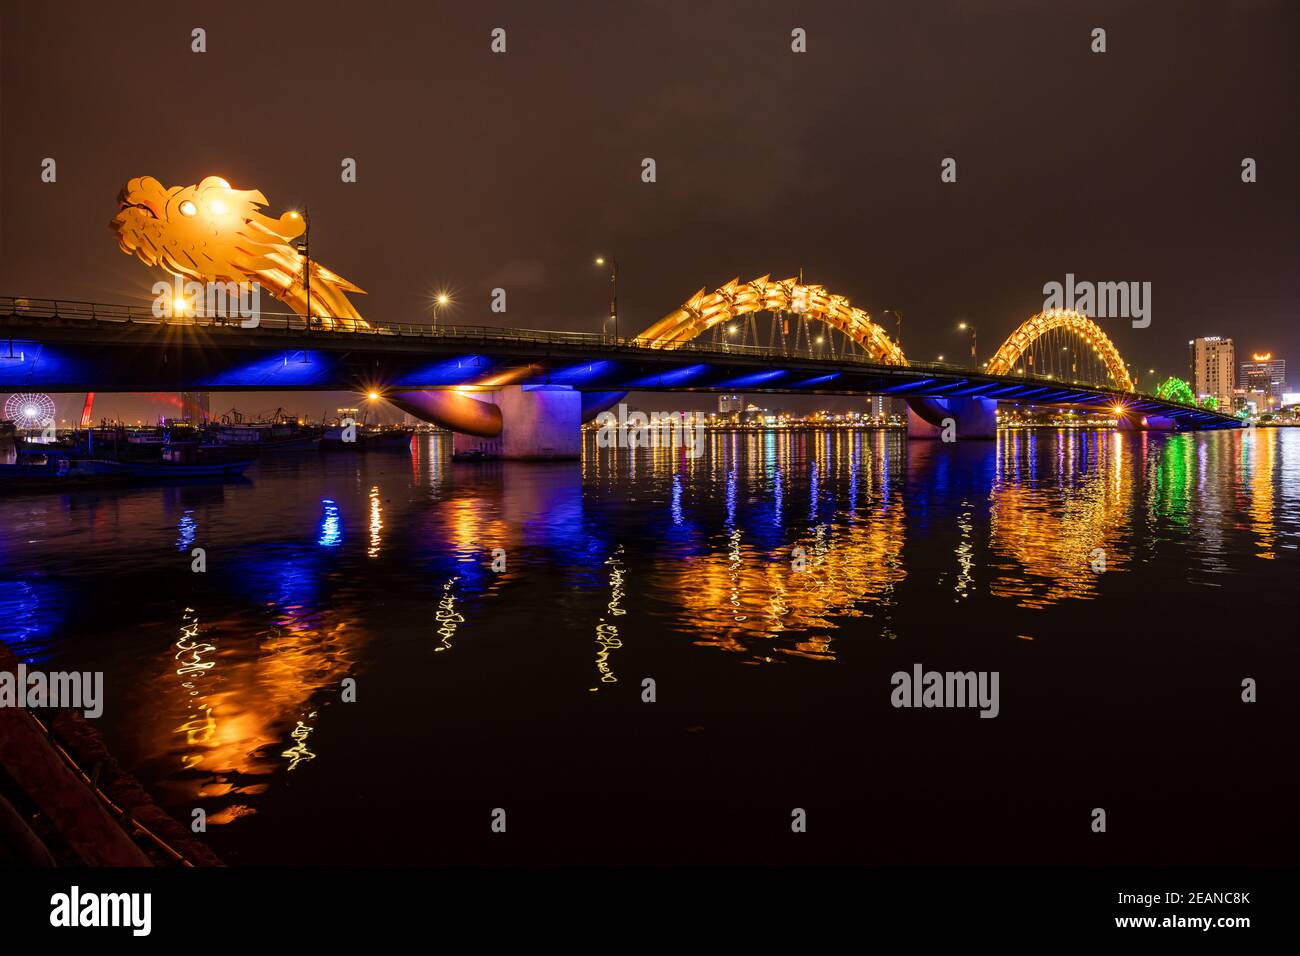 The Dragon Bridge of Da Nang in Vietnam Stock Photo